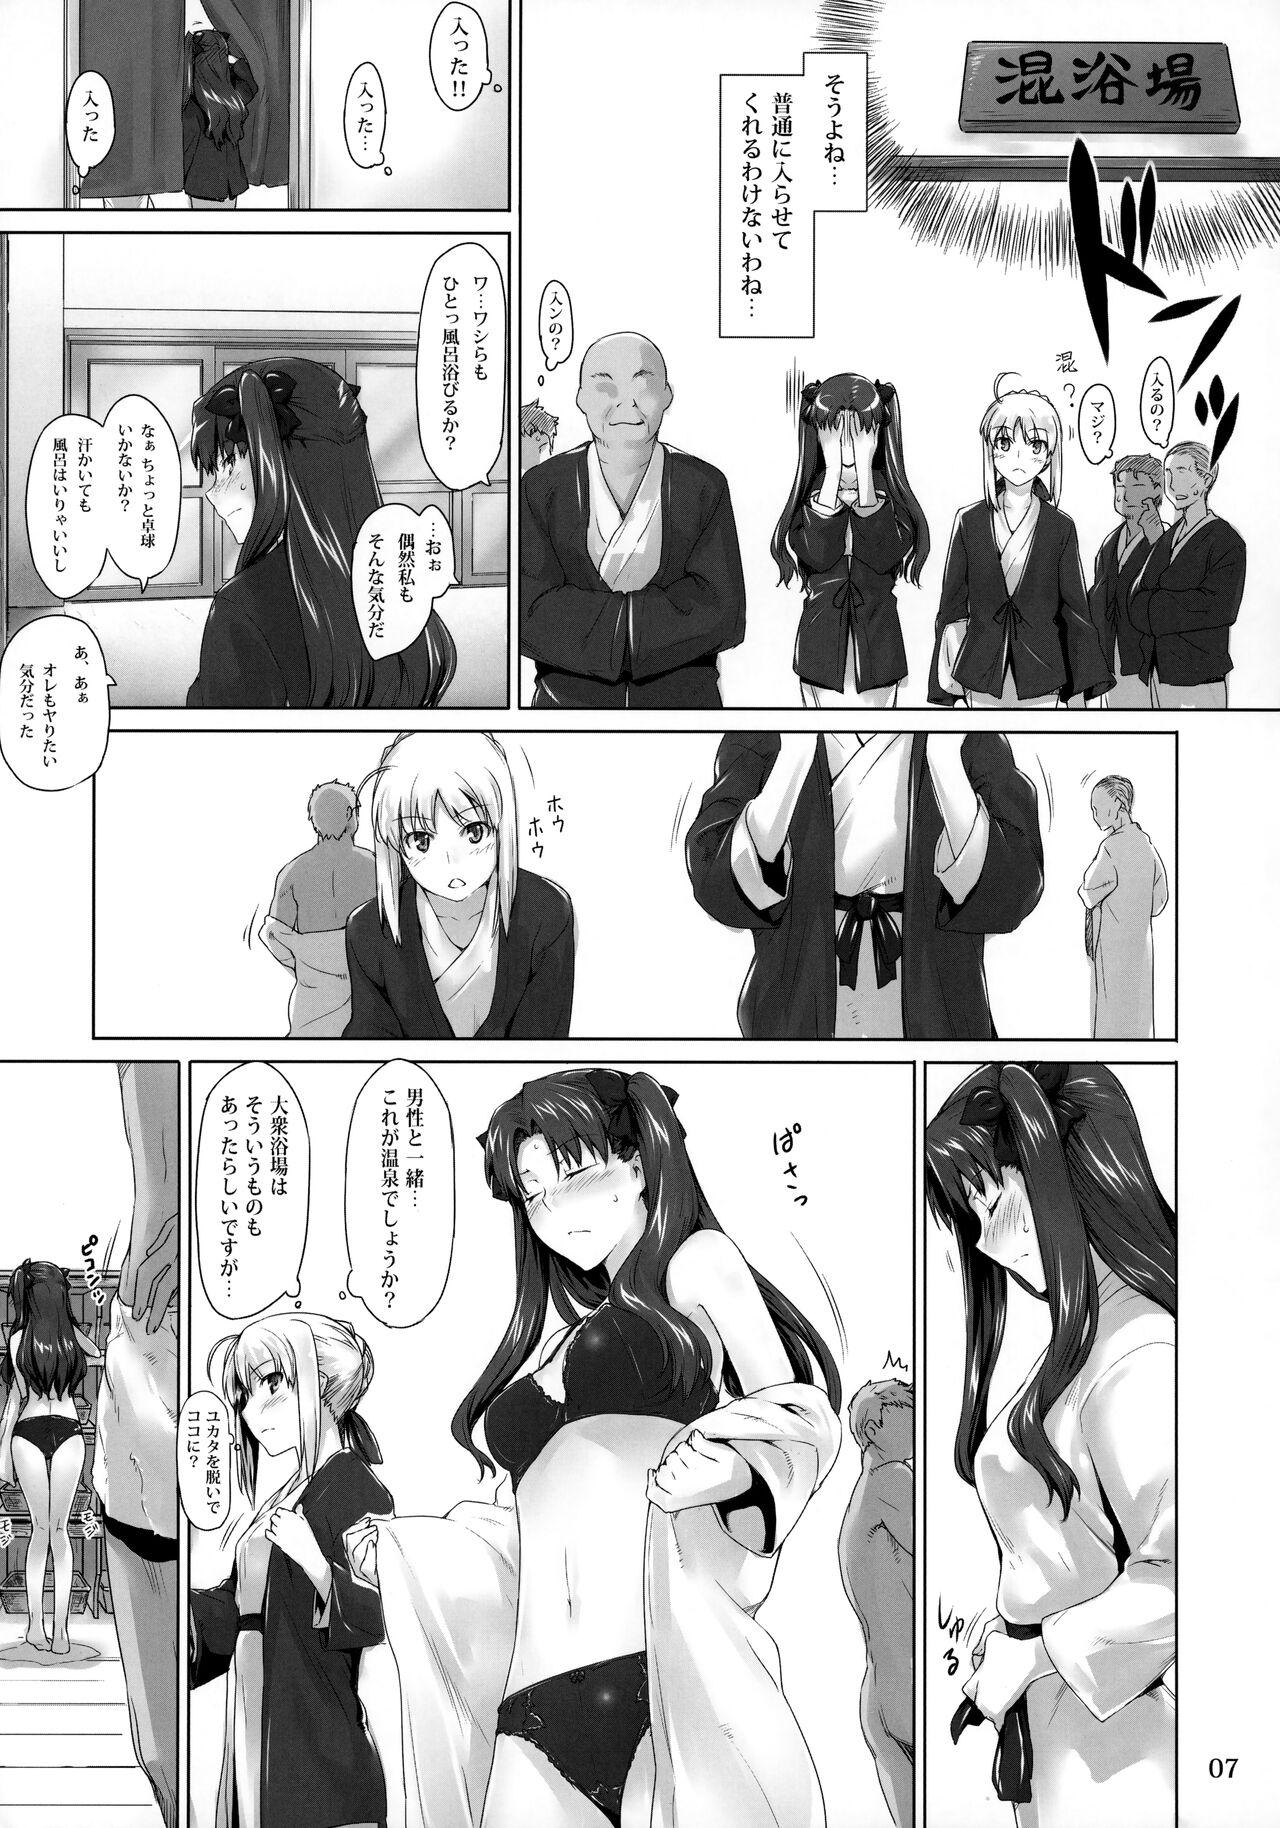 Blackcocks Tosaka-ke no Kakei Jijou 8 - Fate stay night Room - Page 6